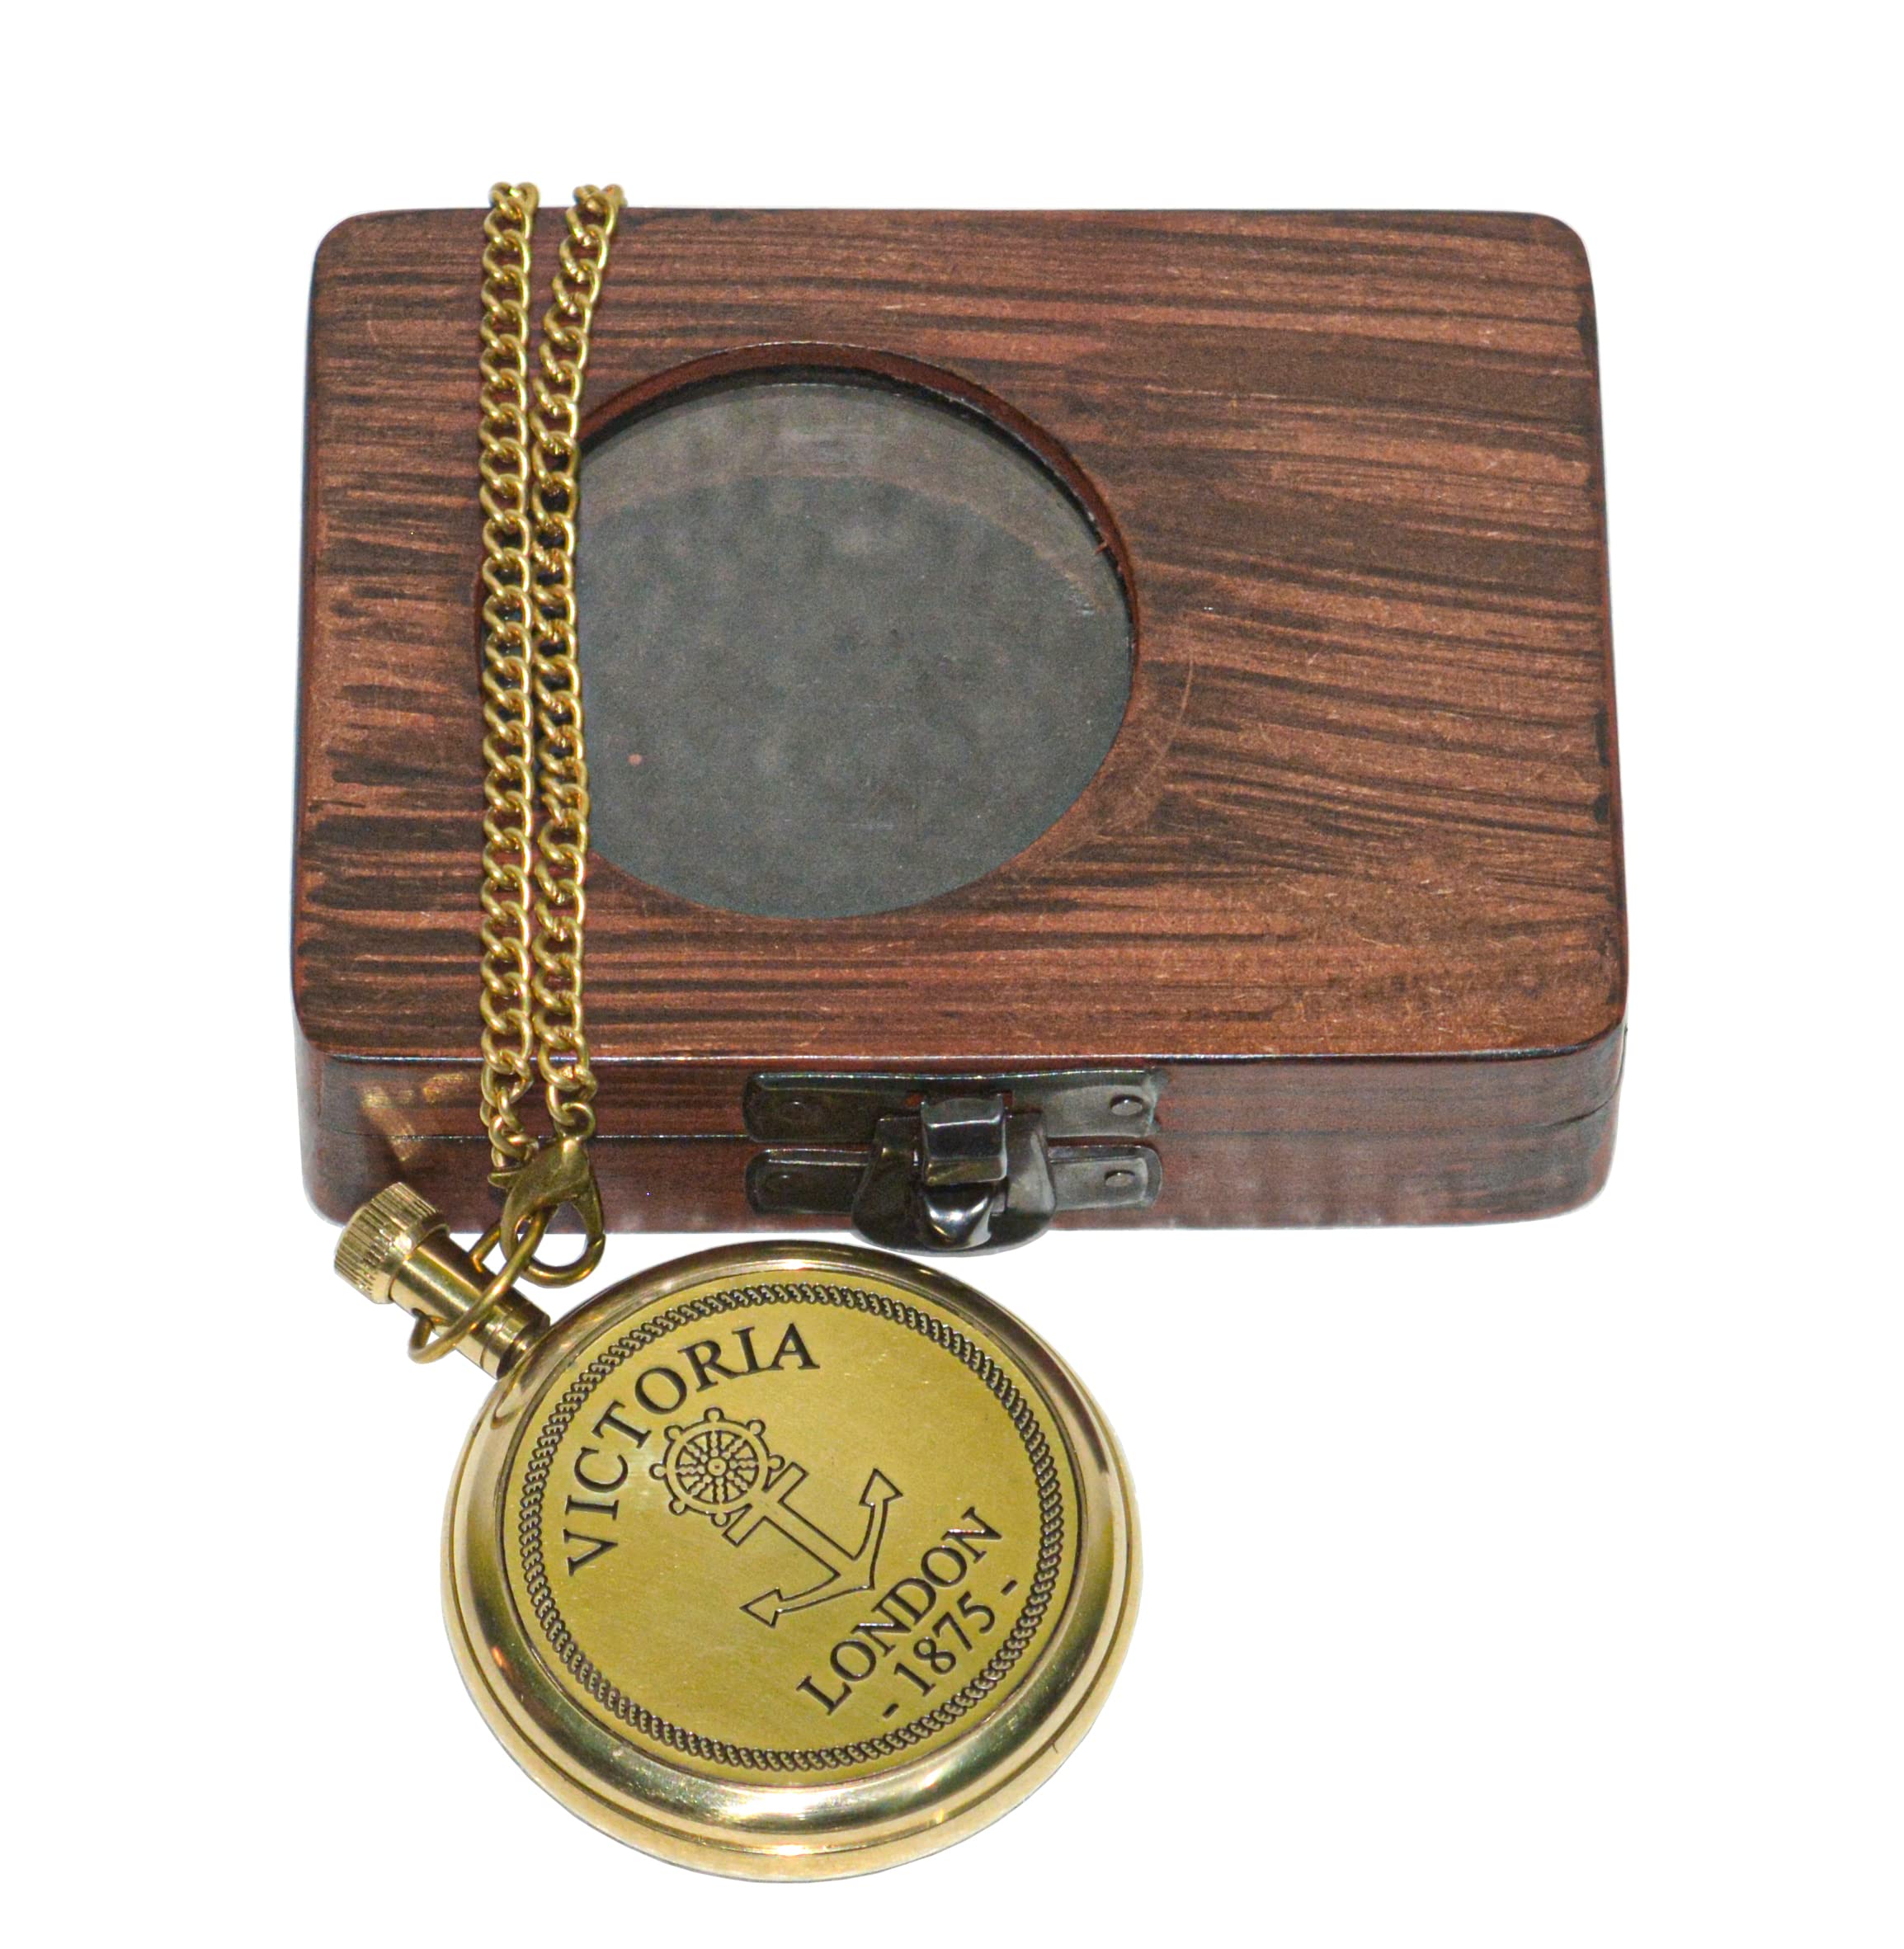 Hassanhandicrafts Antique Vintage Maritime Victoria London Brass Pocket Watch with Wooden Box